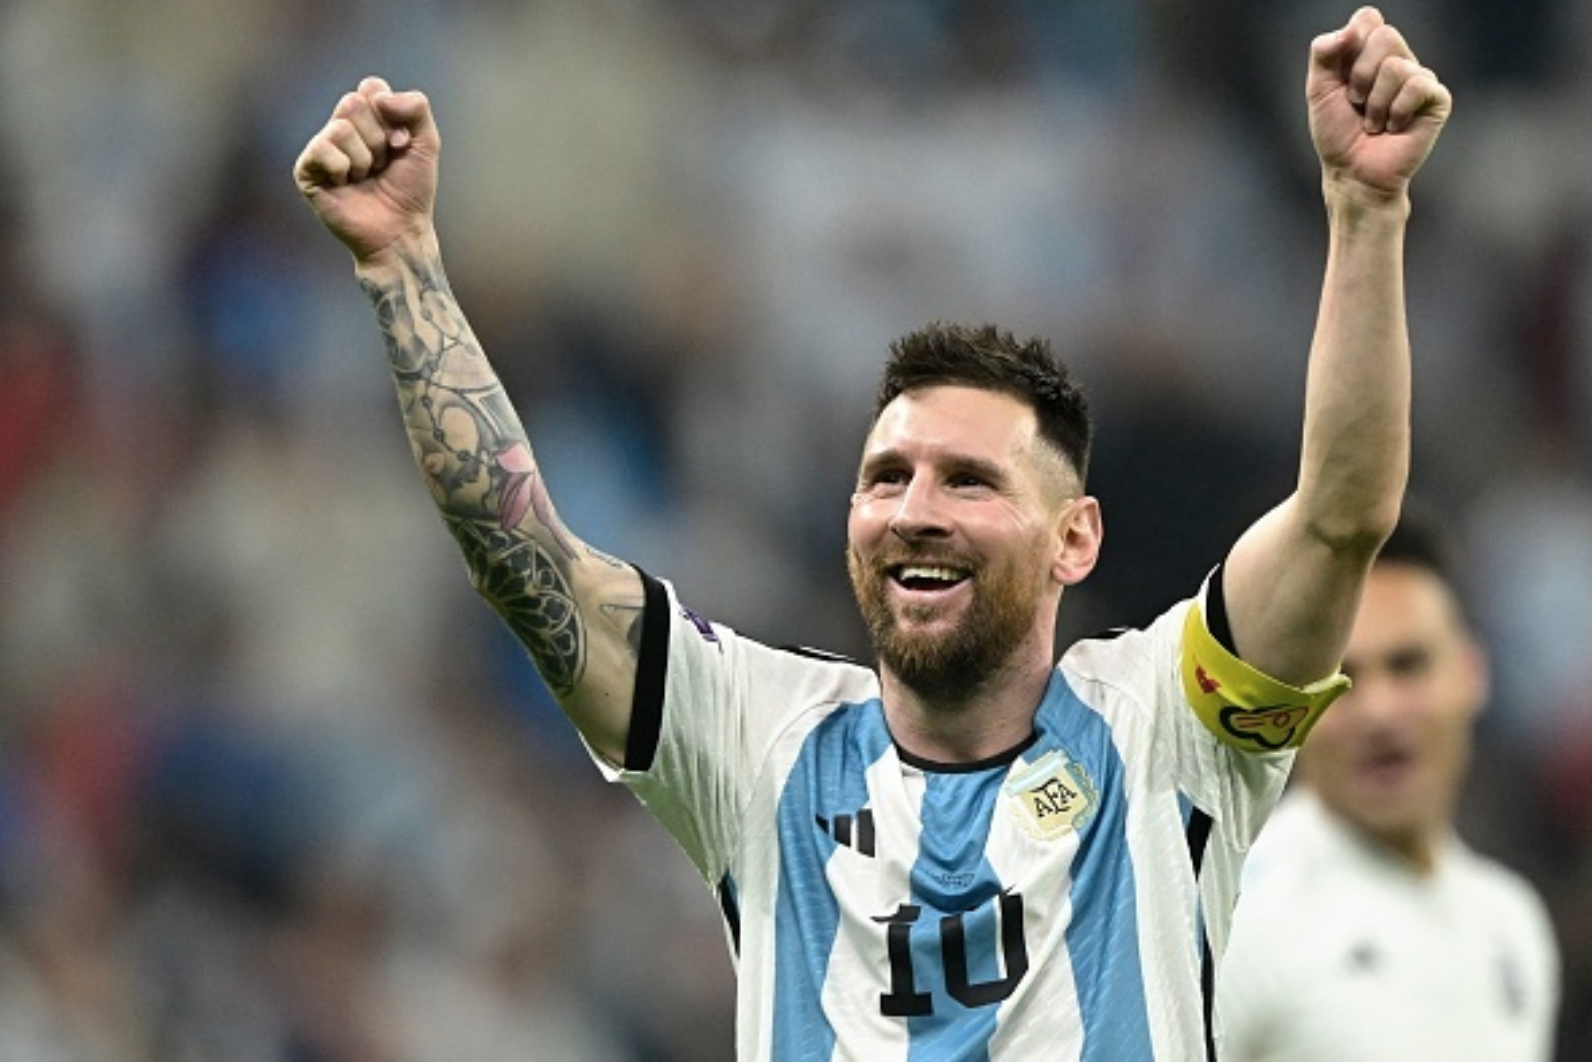 Messi tạo cơn sốt trước chung kết World Cup 2022